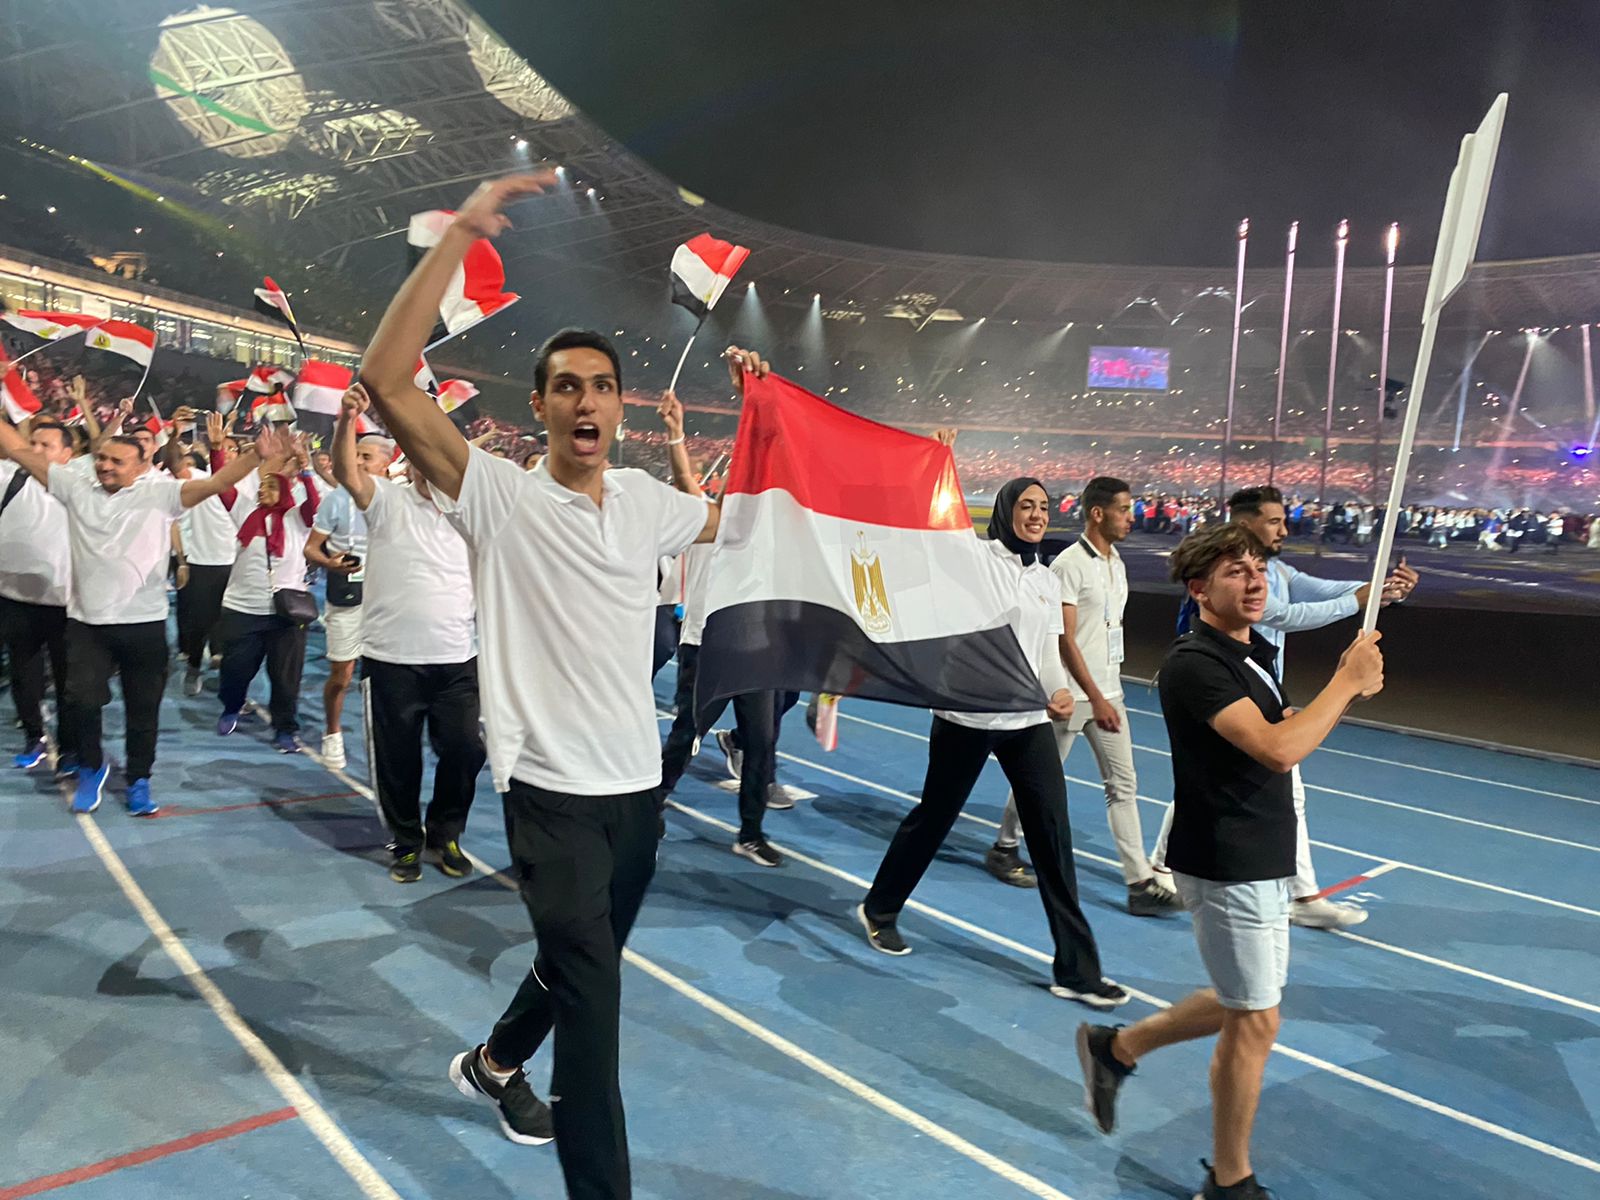 بعثة مصر في افتتاح دورة ألعاب البحر المتوسط (3)